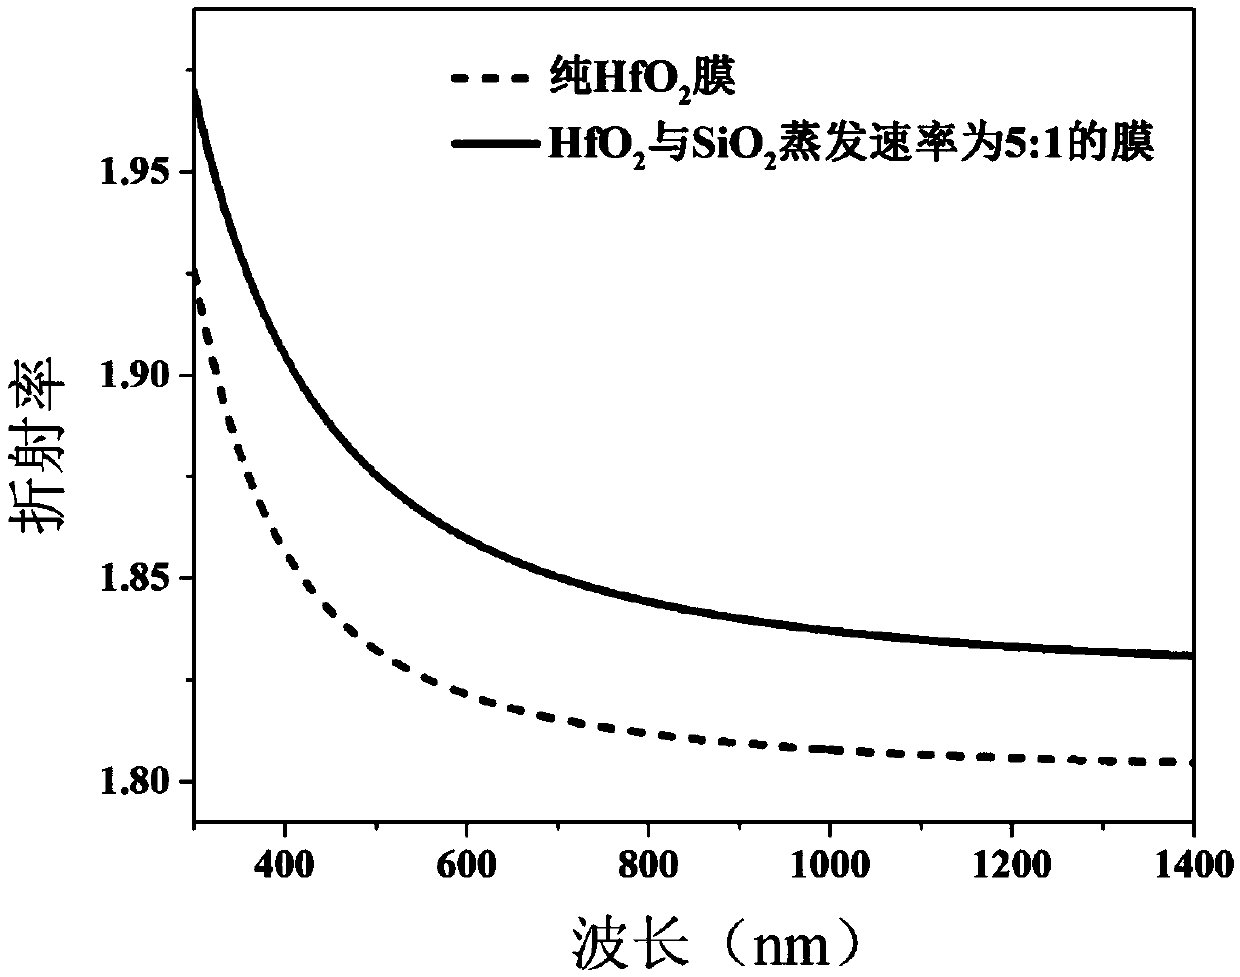 Method for raising refractive index of hafnium oxide film